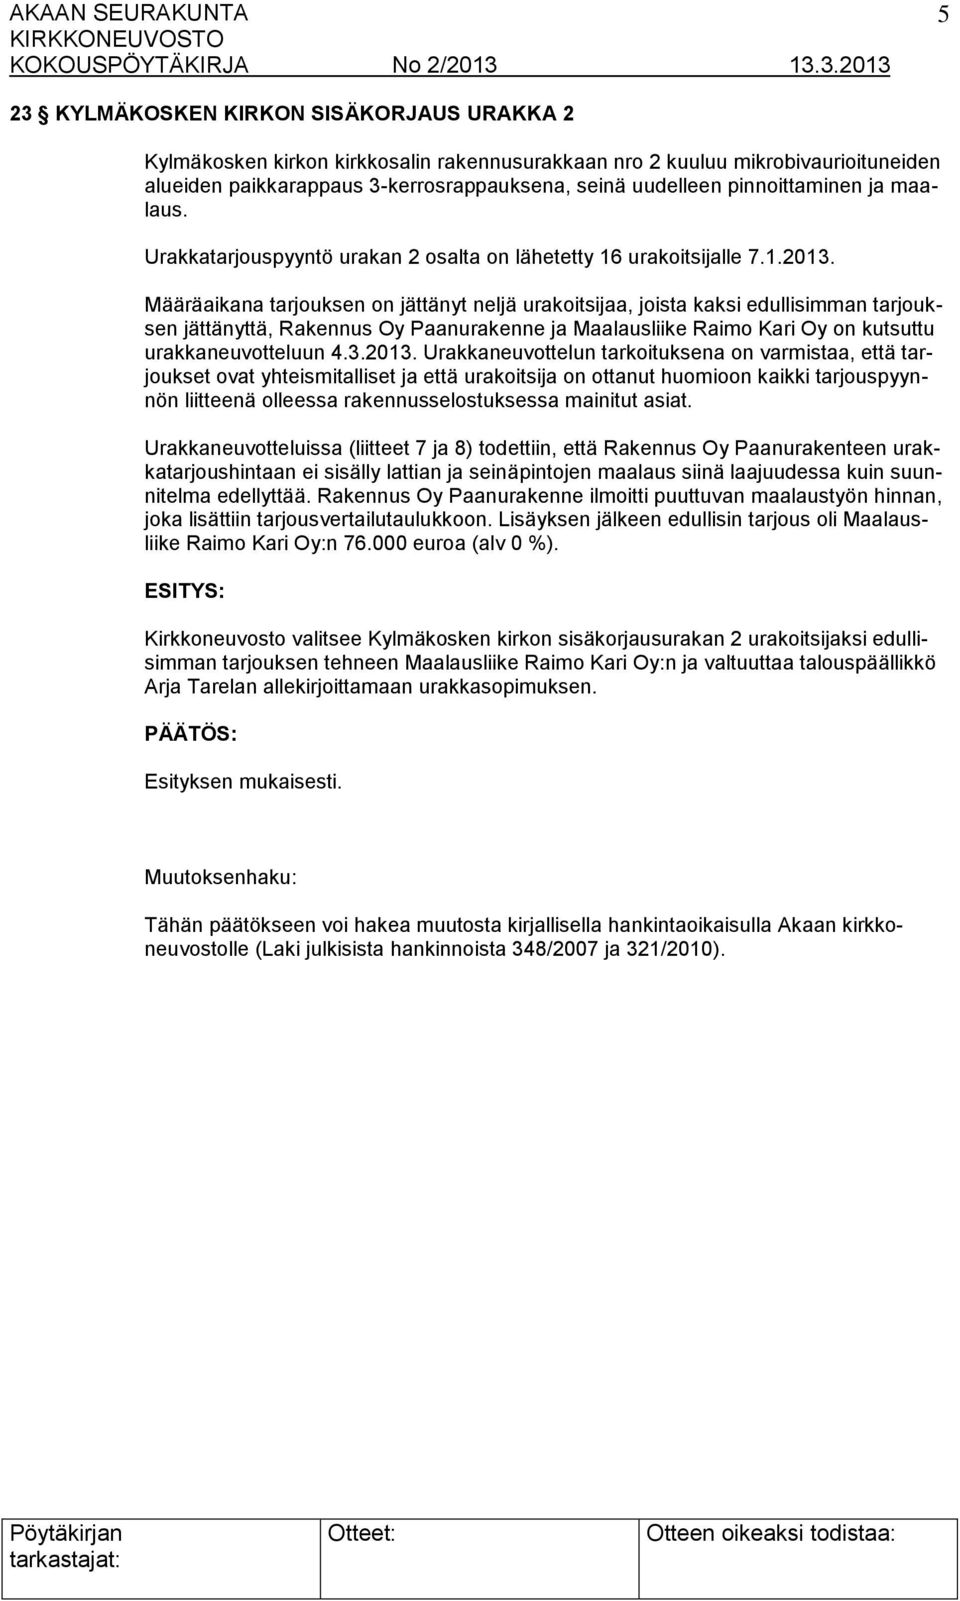 Määräaikana tarjouksen on jättänyt neljä urakoitsijaa, joista kaksi edullisimman tarjouksen jättänyttä, Rakennus Oy Paanurakenne ja Maalausliike Raimo Kari Oy on kutsuttu urakkaneuvotteluun 4.3.2013.